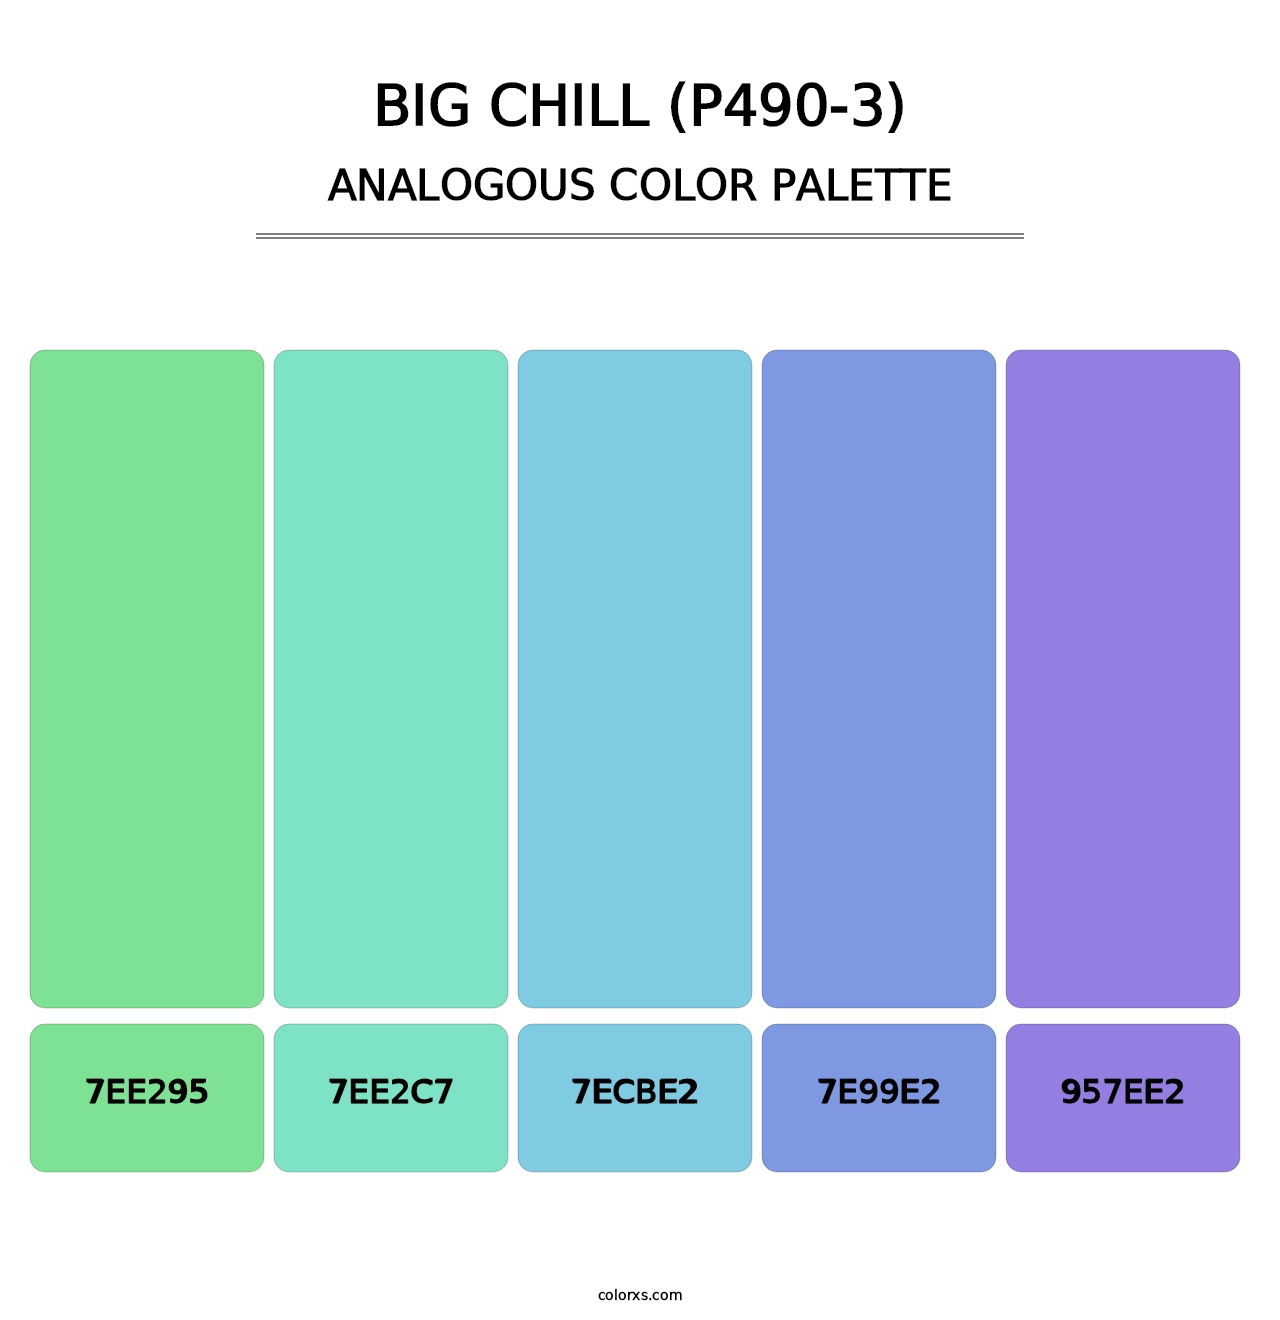 Big Chill (P490-3) - Analogous Color Palette